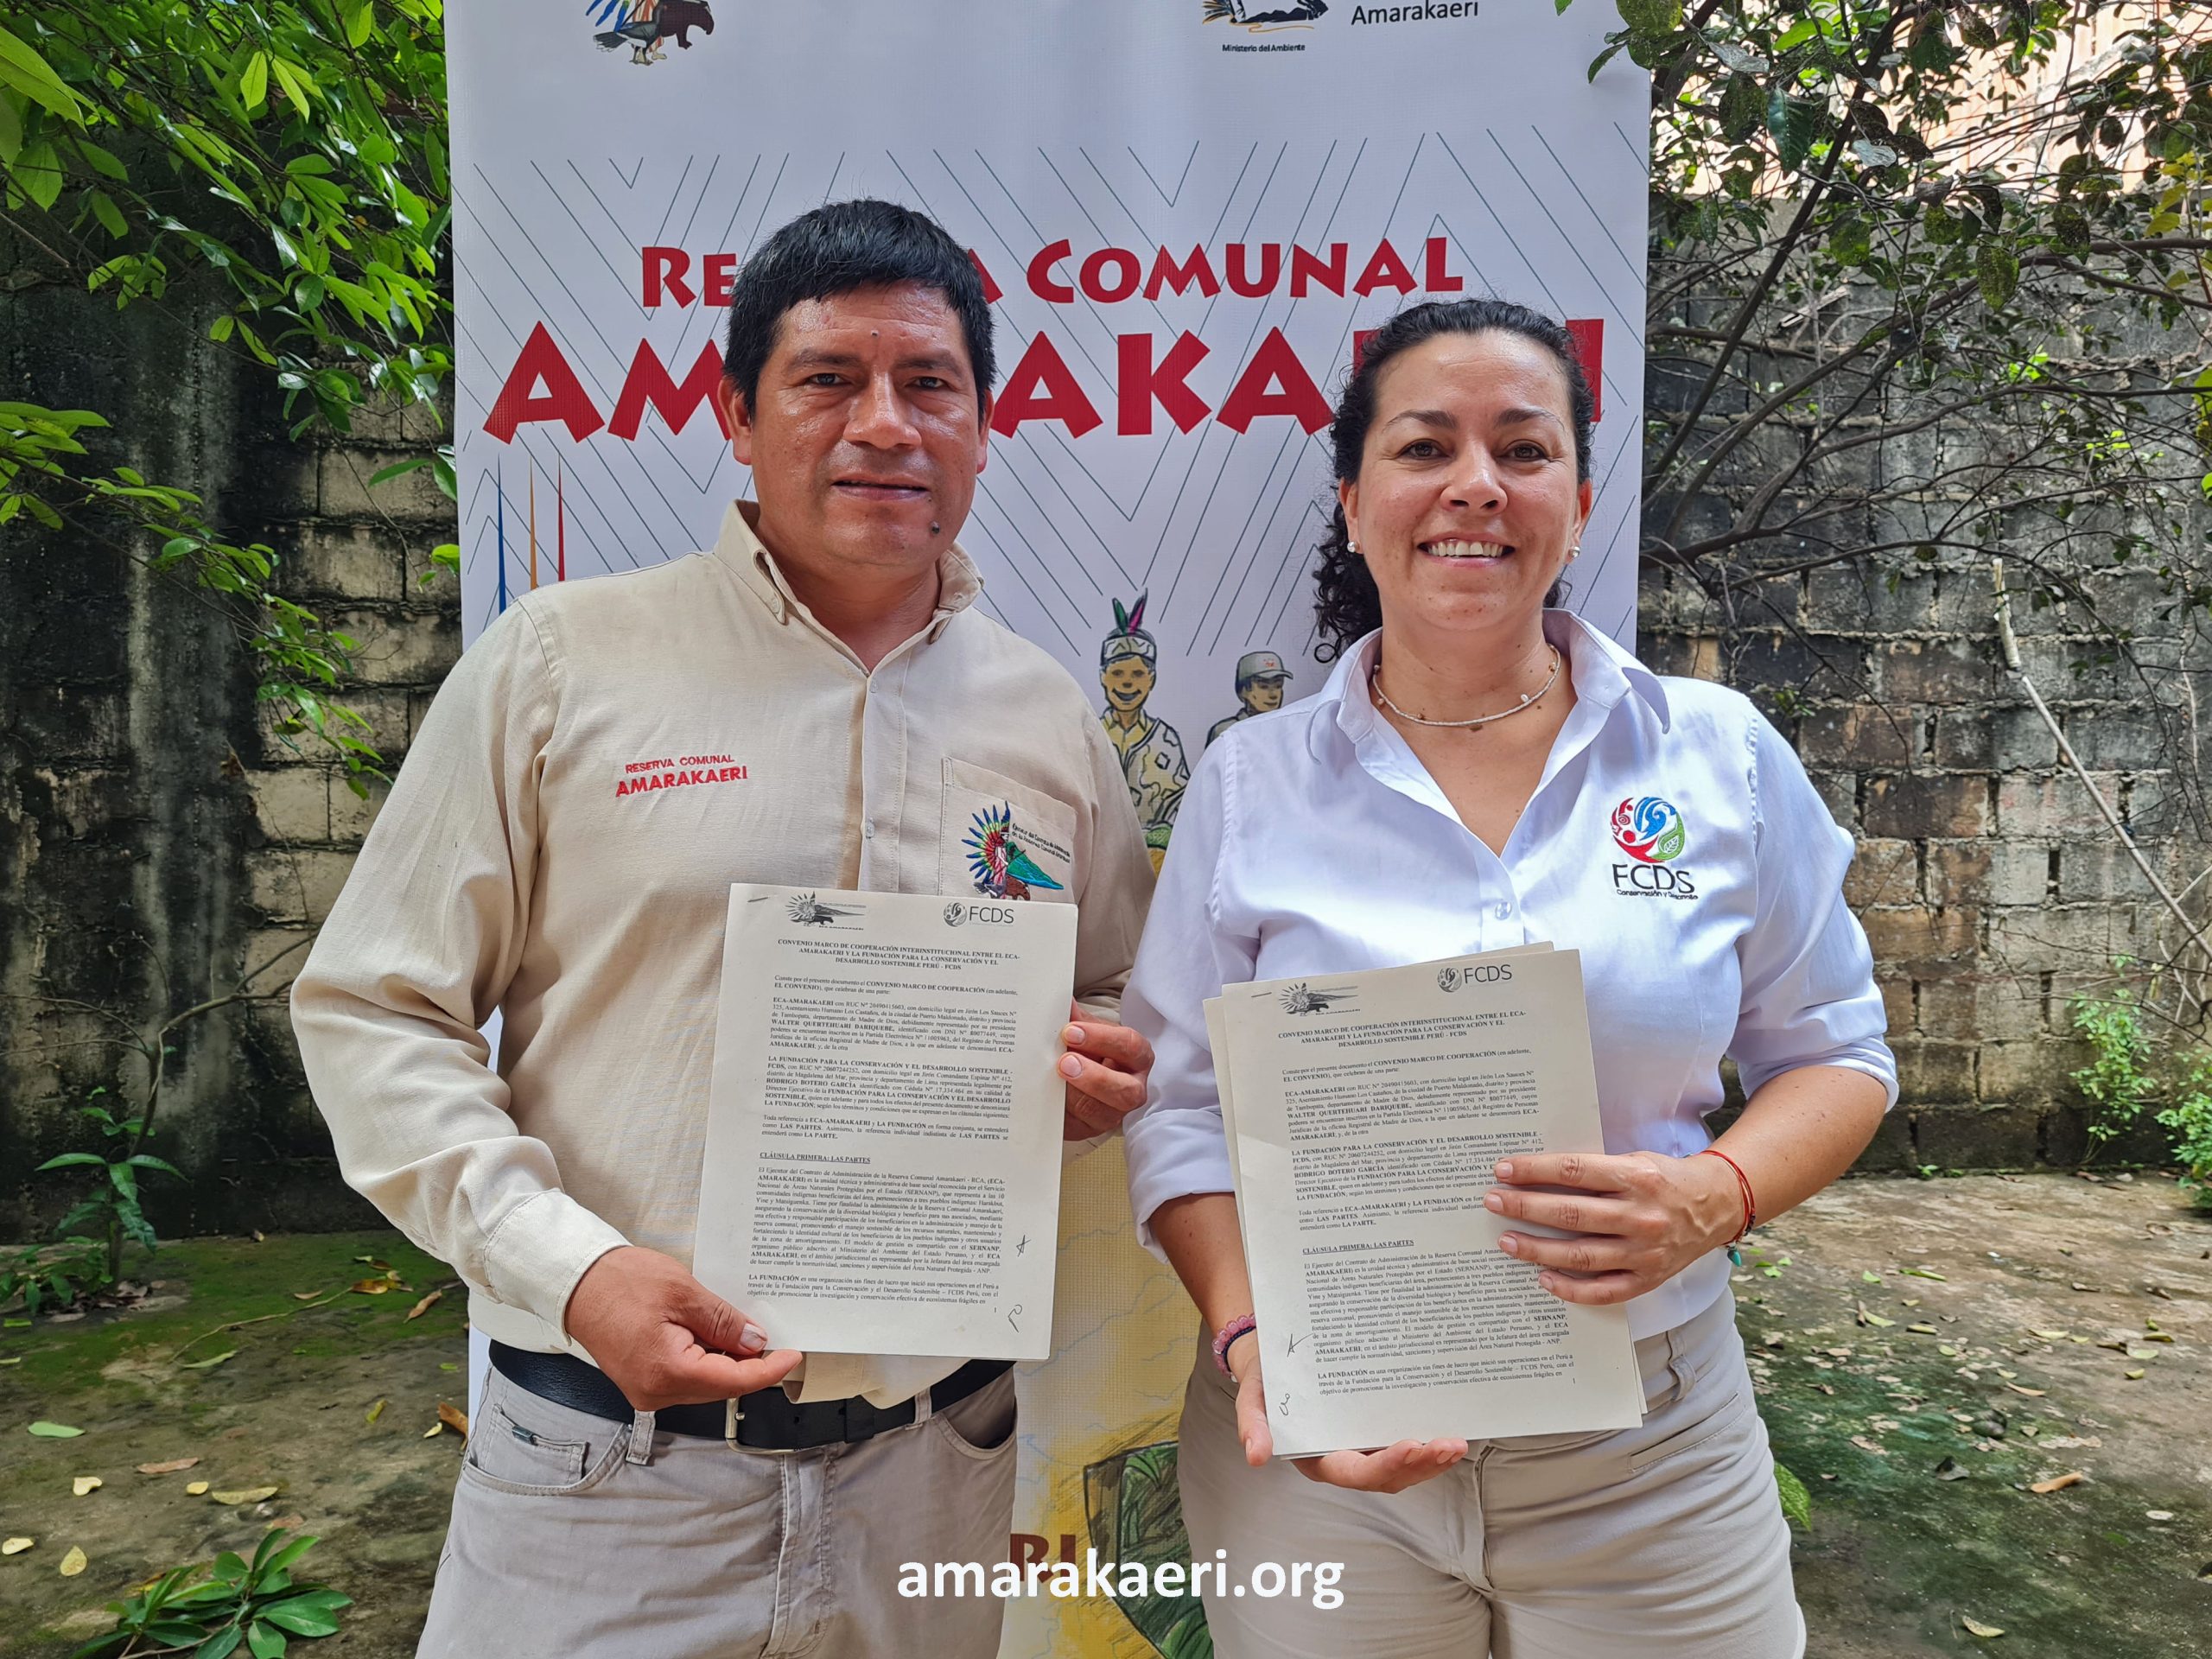 El presidente del ECA Amarakaeri y la directora de la FCDS en Perú suscribieron convenio interinstitucional